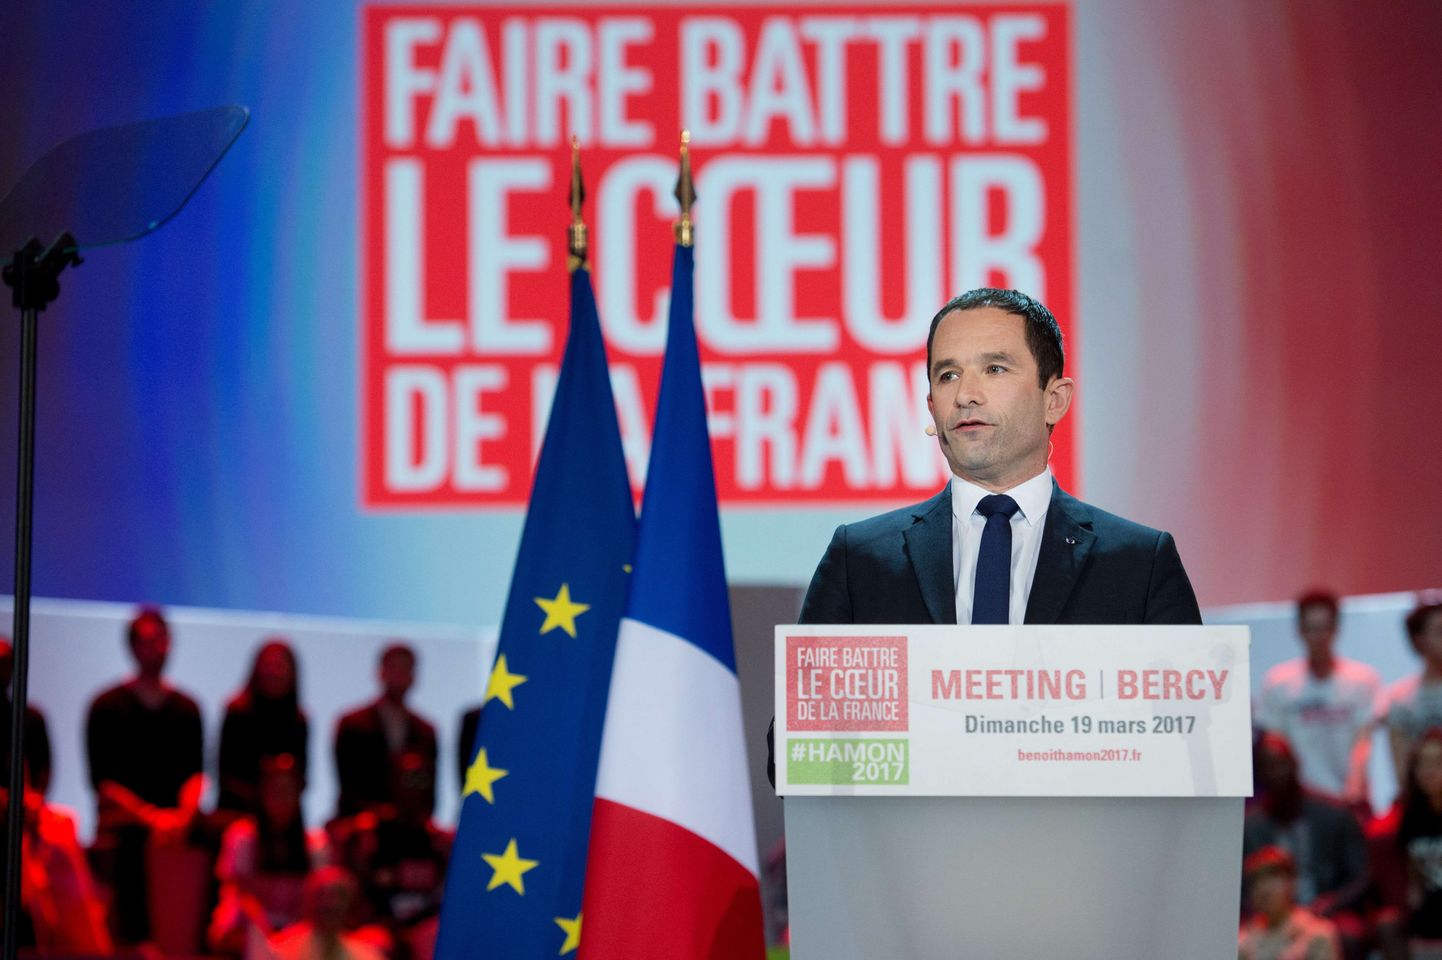 Prantsuse presidendikandidaat Benoit Hamon